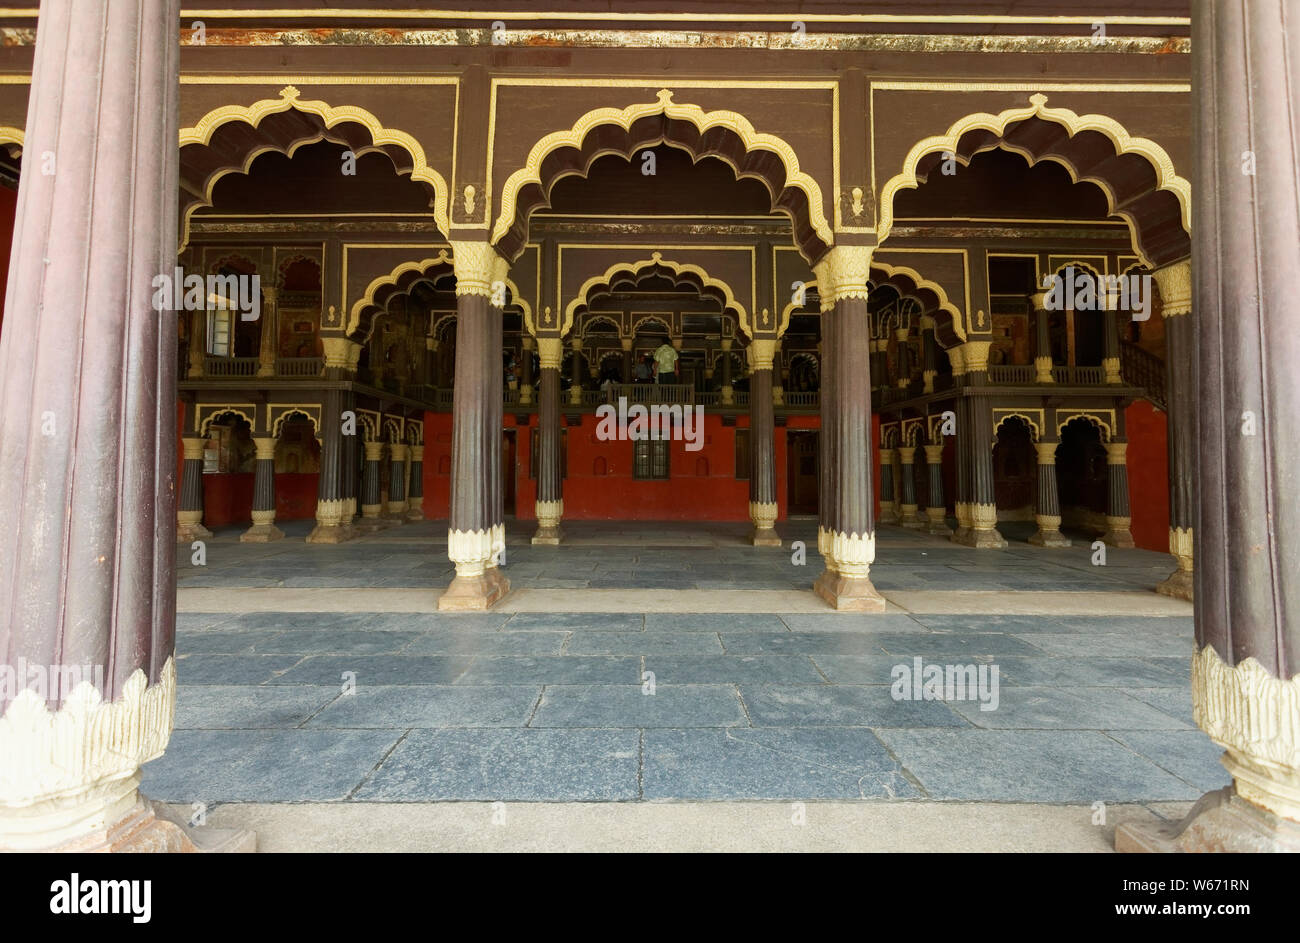 Tipu Sultan's Summer Palace, en Bangalore, India, es un ejemplo de arquitectura Indo-Islamic, la residencia de verano de la regla Mysorean Tipu Sultan. Foto de stock